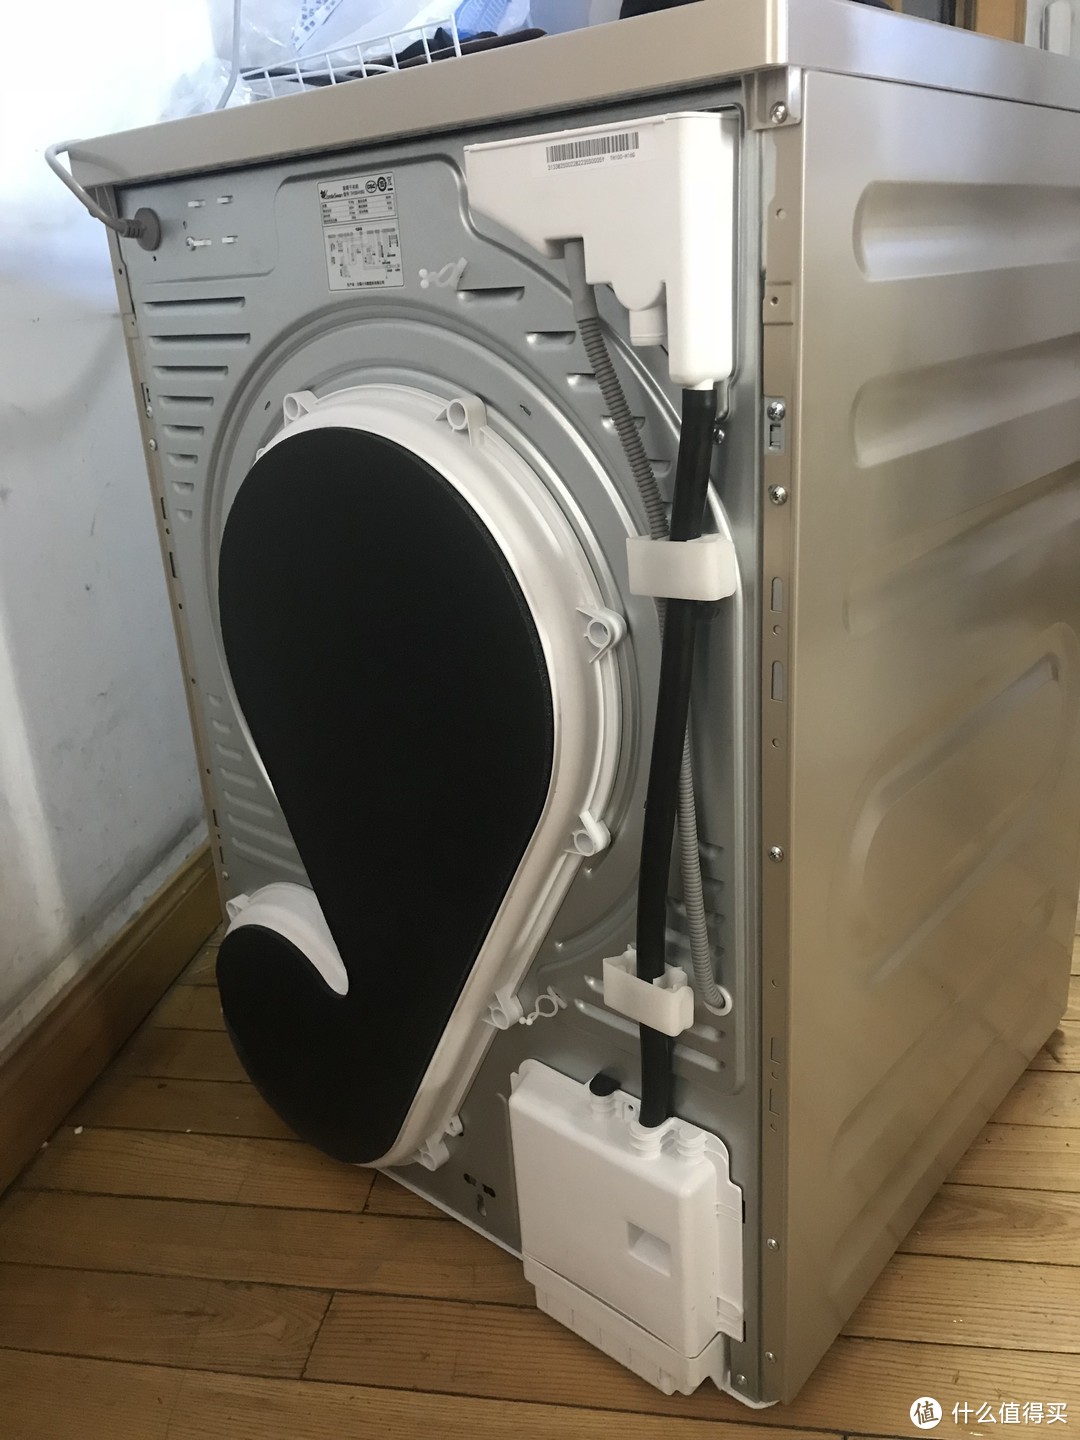 热泵干衣机到底是如何工作的？多样烘干效果实证！